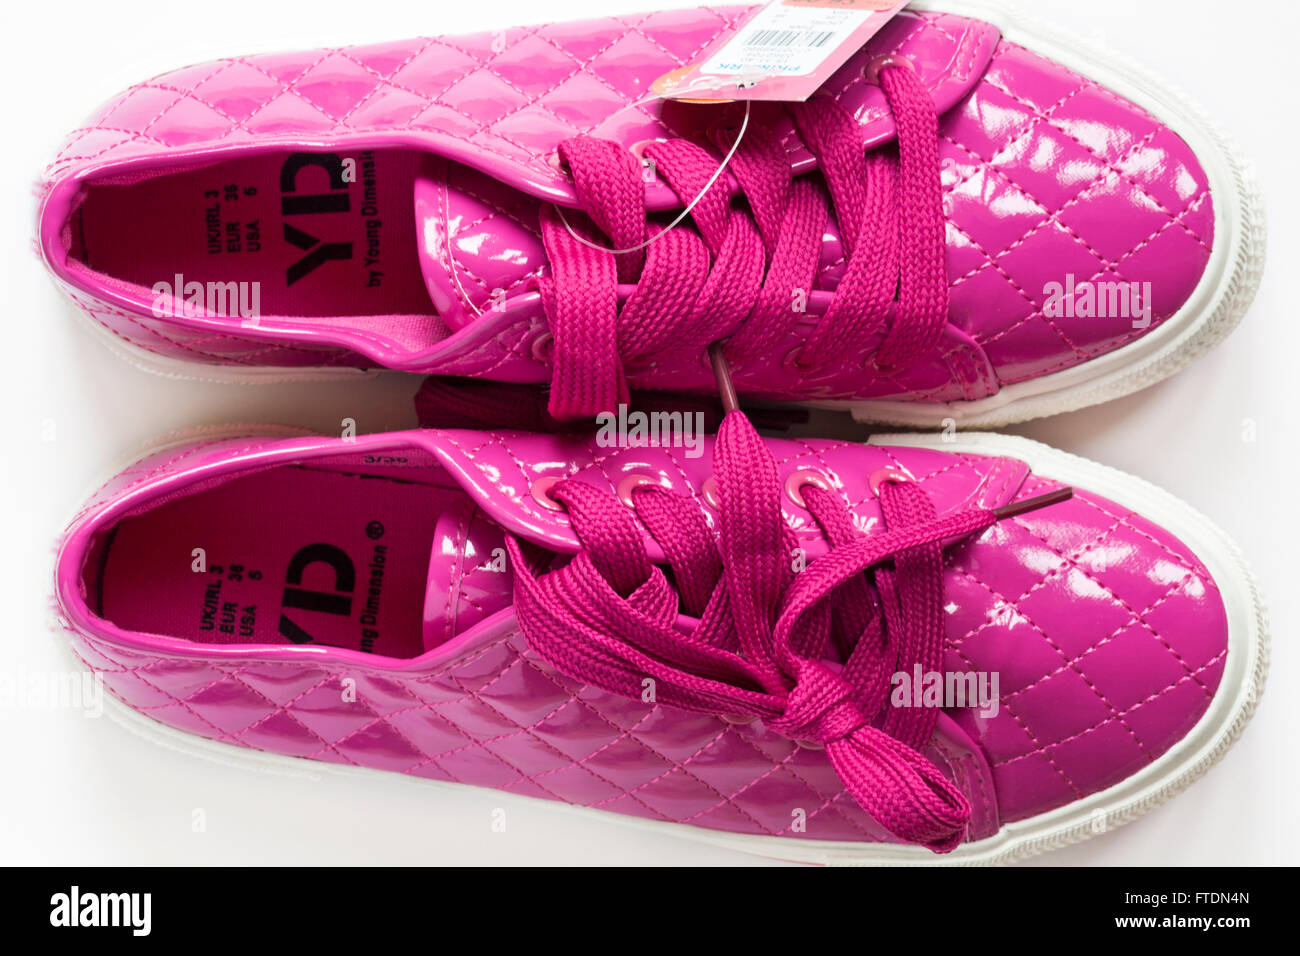 Young Dimension glänzend rosa Schuhe mit Schnürsenkeln setzen auf weißem  Hintergrund Stockfotografie - Alamy